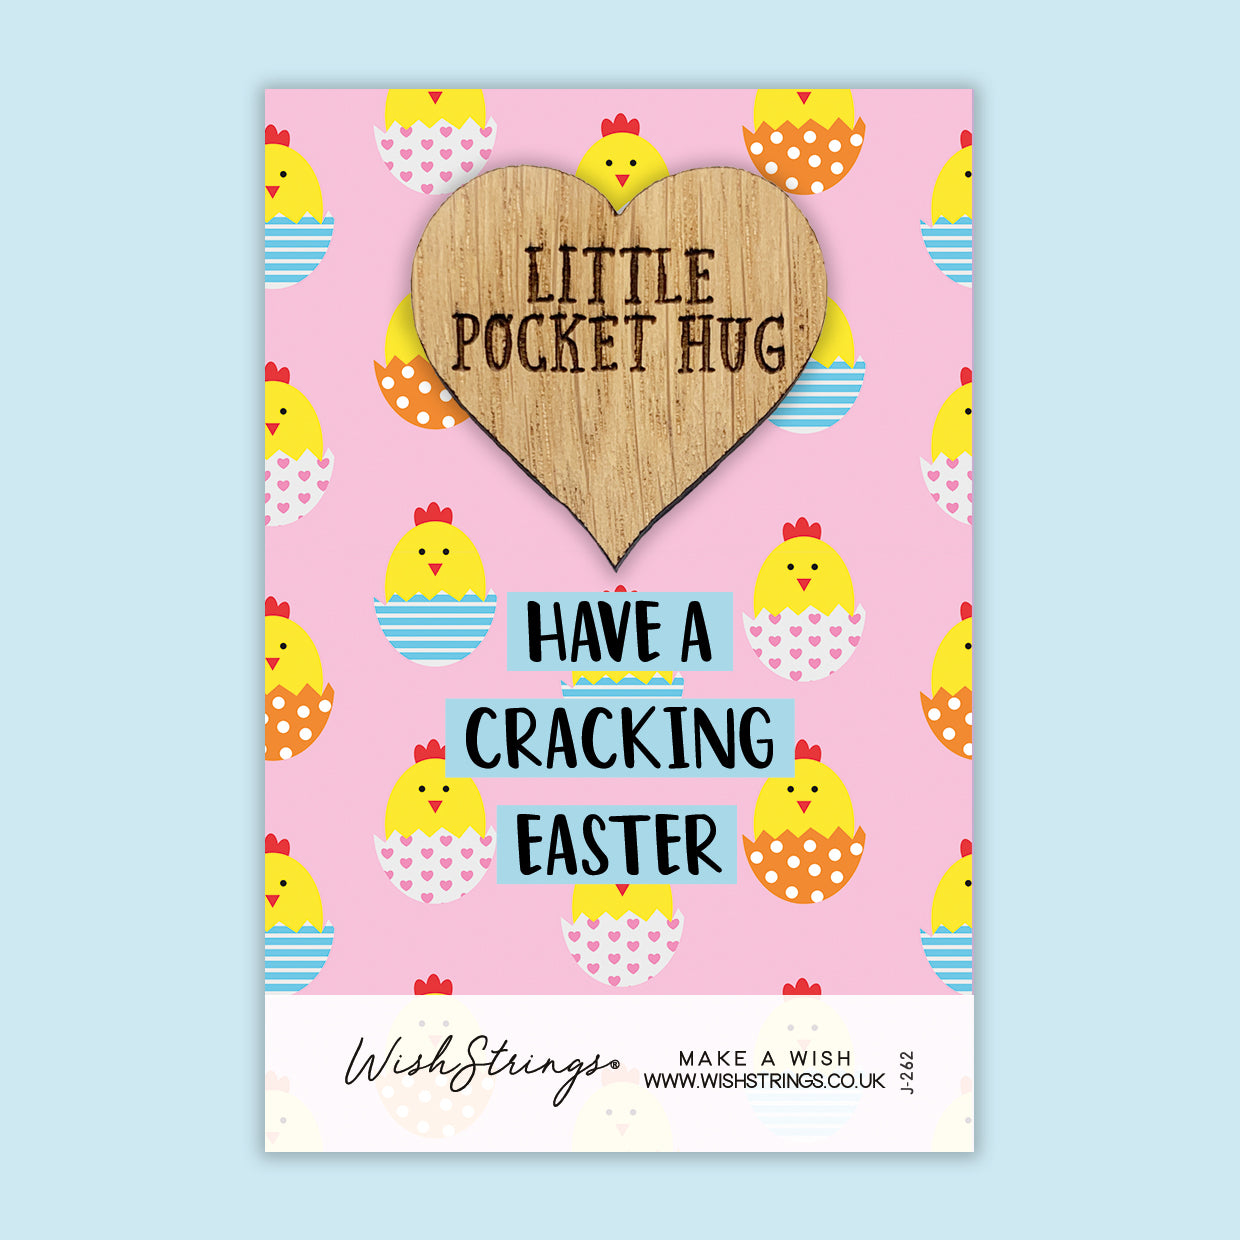 Cracking Easter - Little Pocket Hug - Wooden Heart Keepsake Token